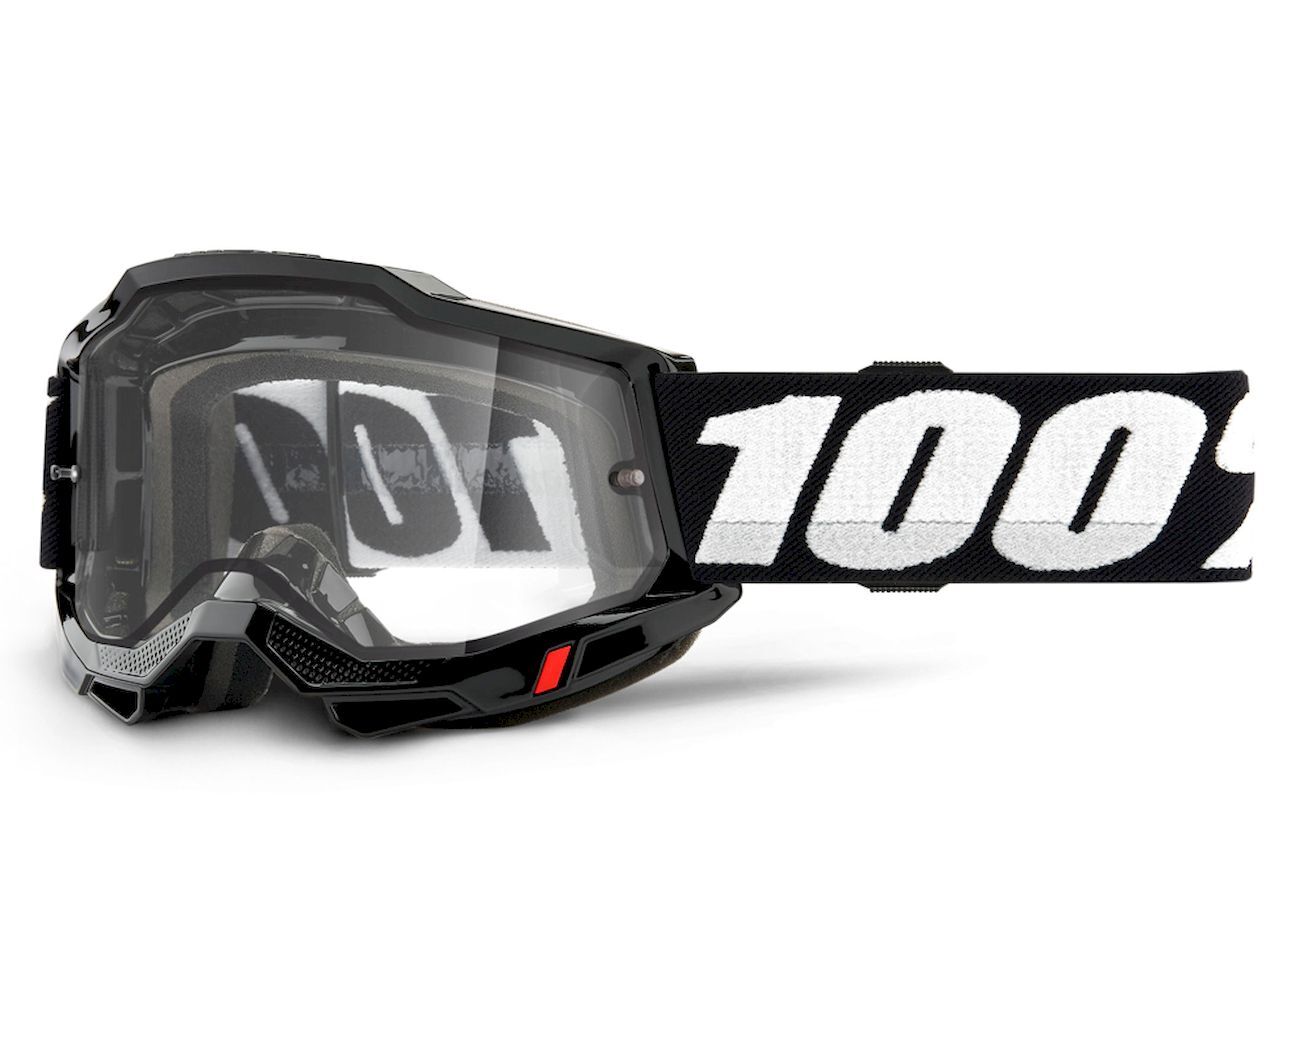 100% Accuri 2 Enduro - MTB Goggles - Men's